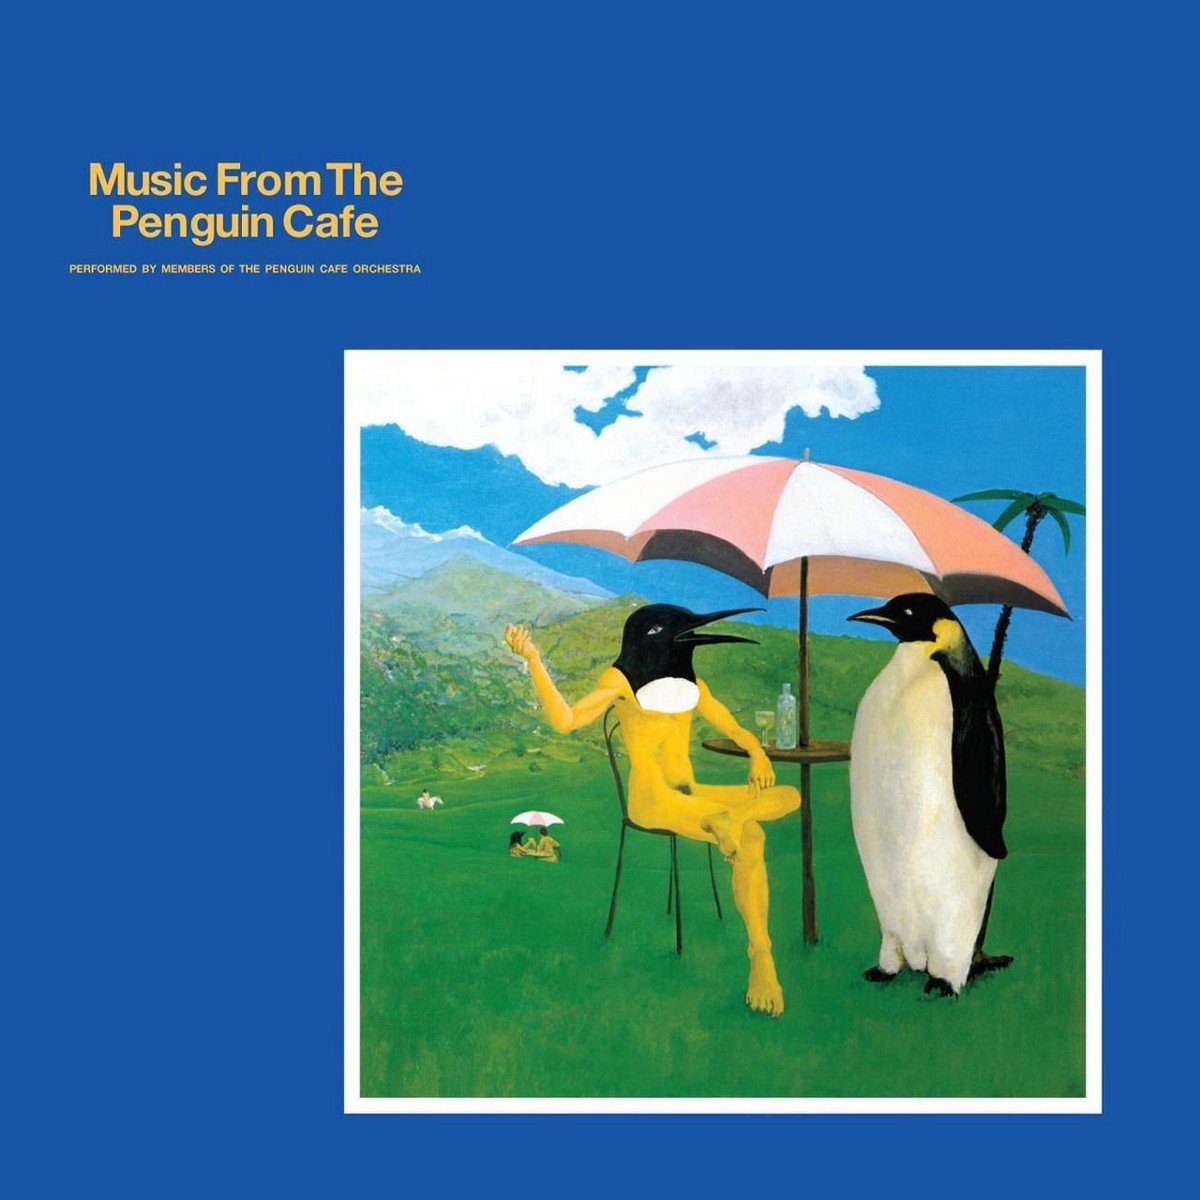 Hugebaby — Penguin Cafe Orchestra | Last.fm